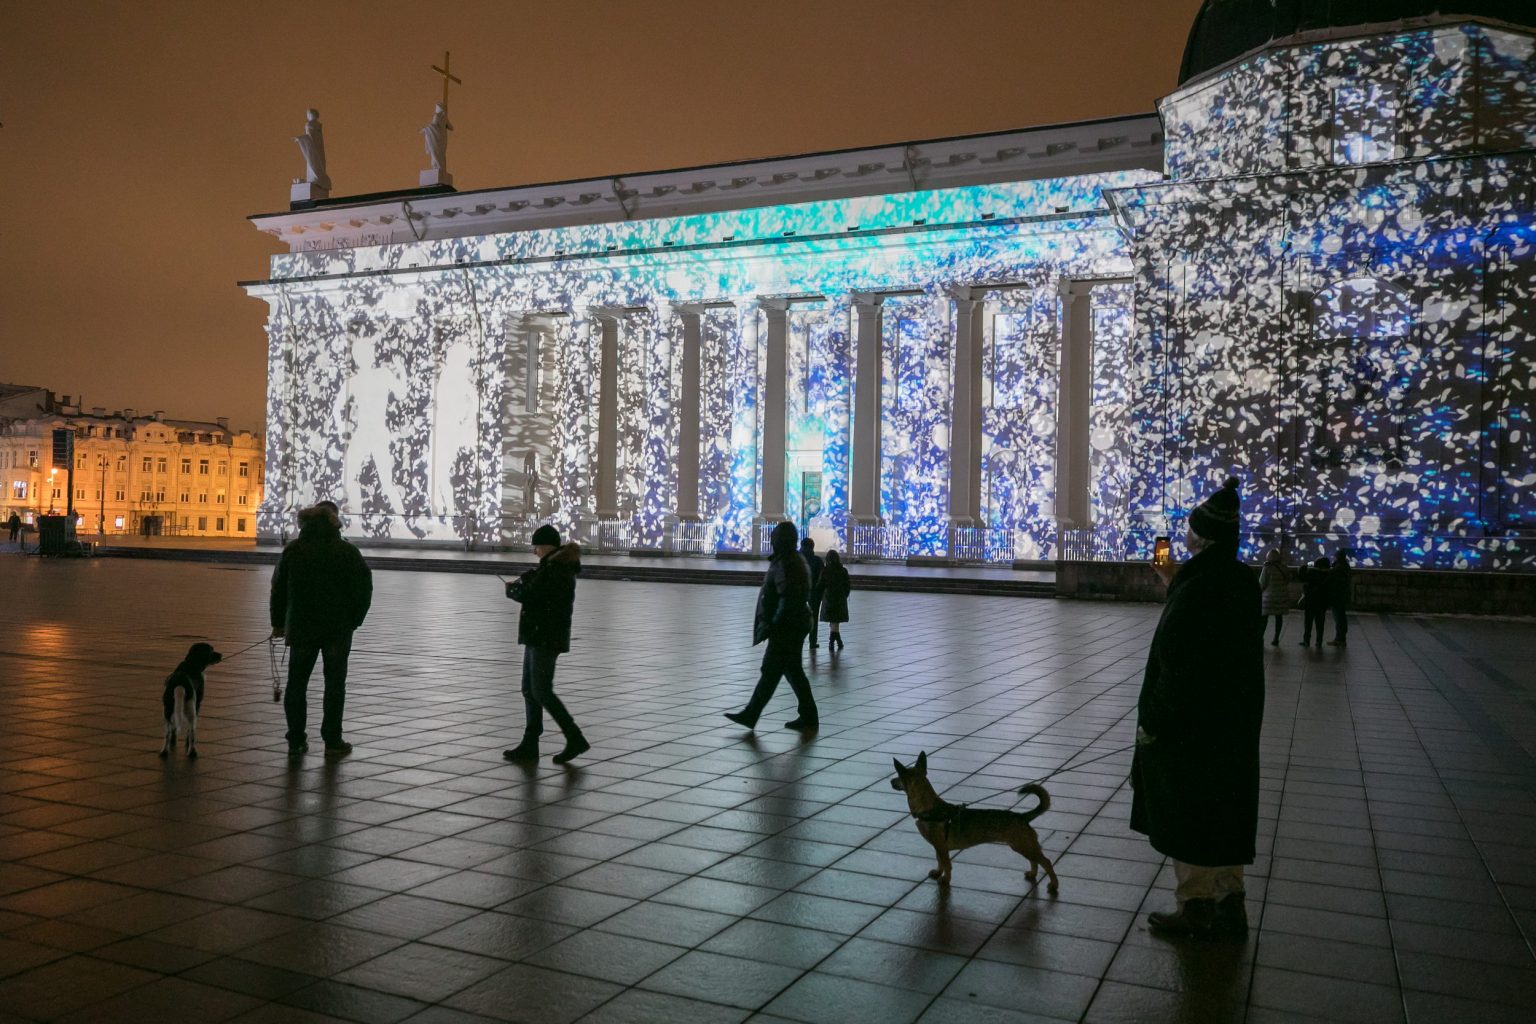 Paskutinę gruodžio savaitę Vilniuje džiugins sugrįžusi kalėdinė pasaka